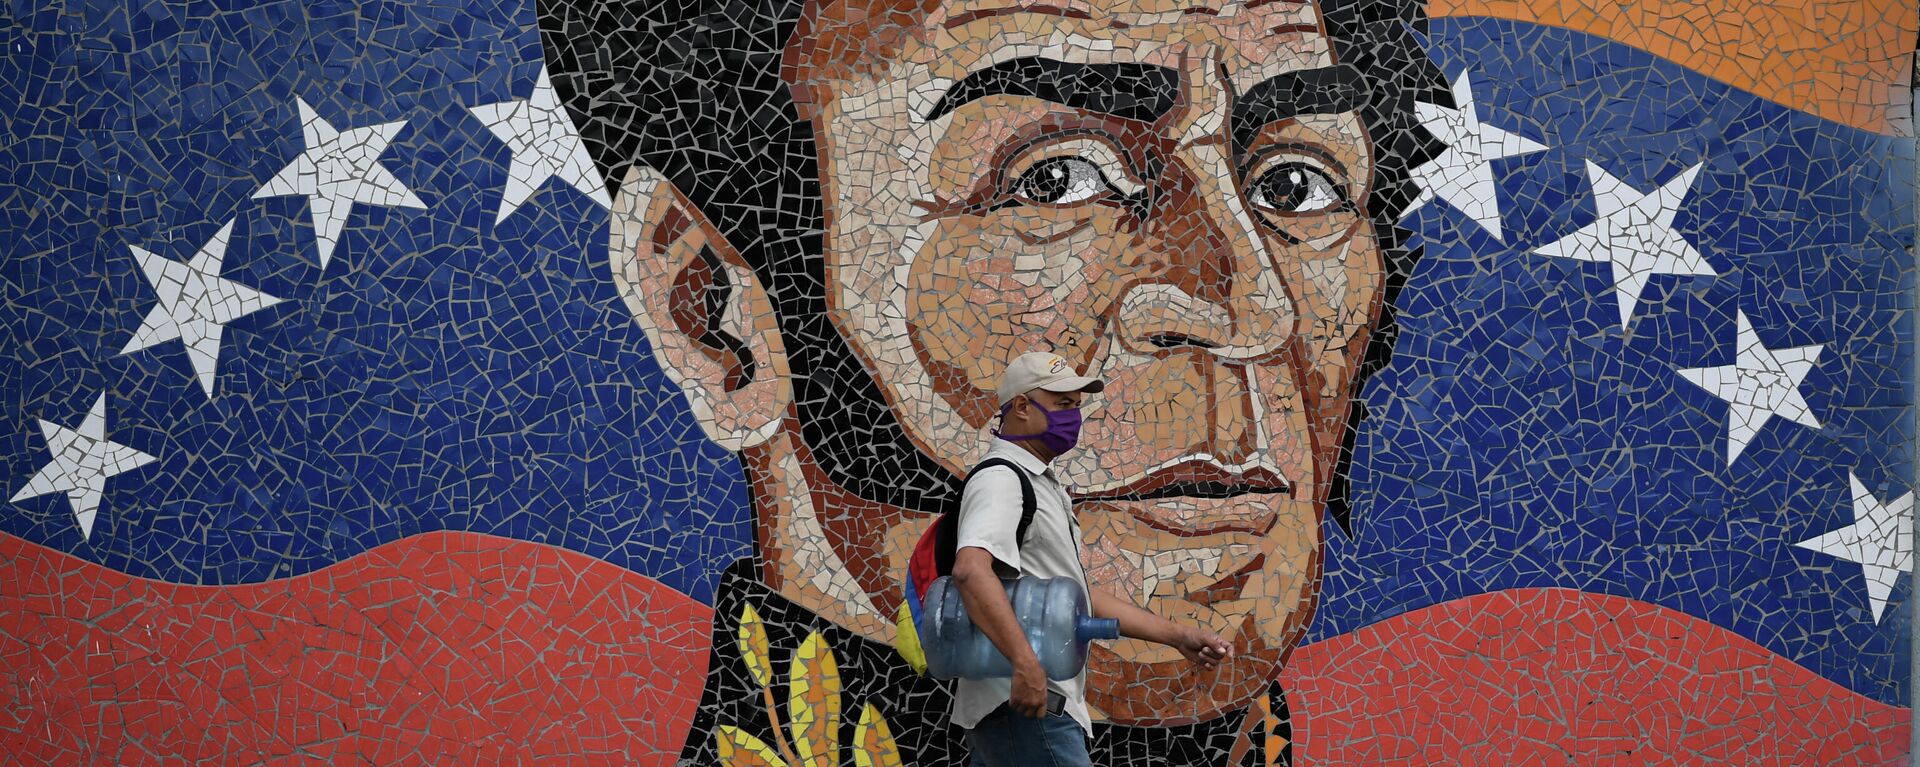 Mosaico de Simón Bolivar, en Caracas, Venezuela - Sputnik Mundo, 1920, 04.03.2021